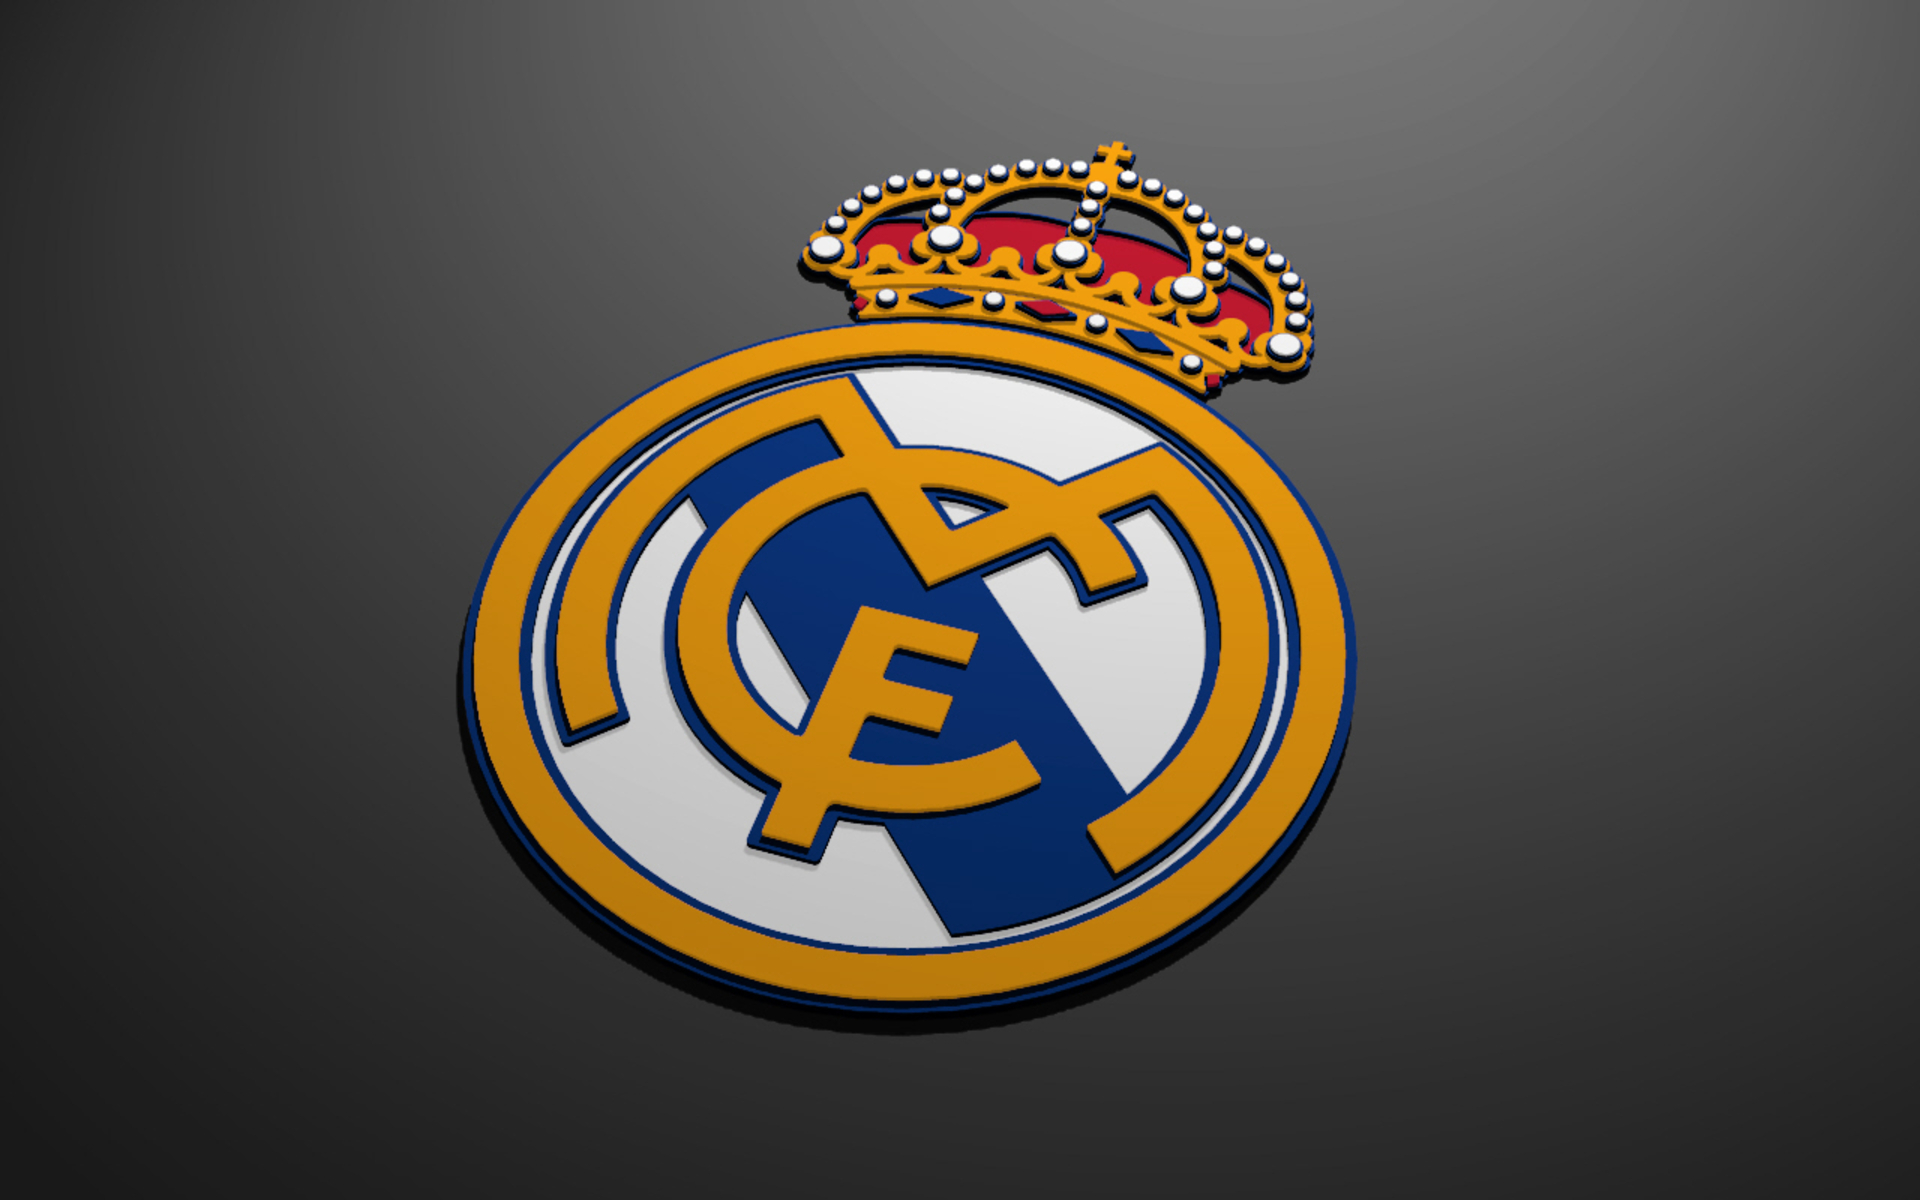 Real Madrid Logo Football Club